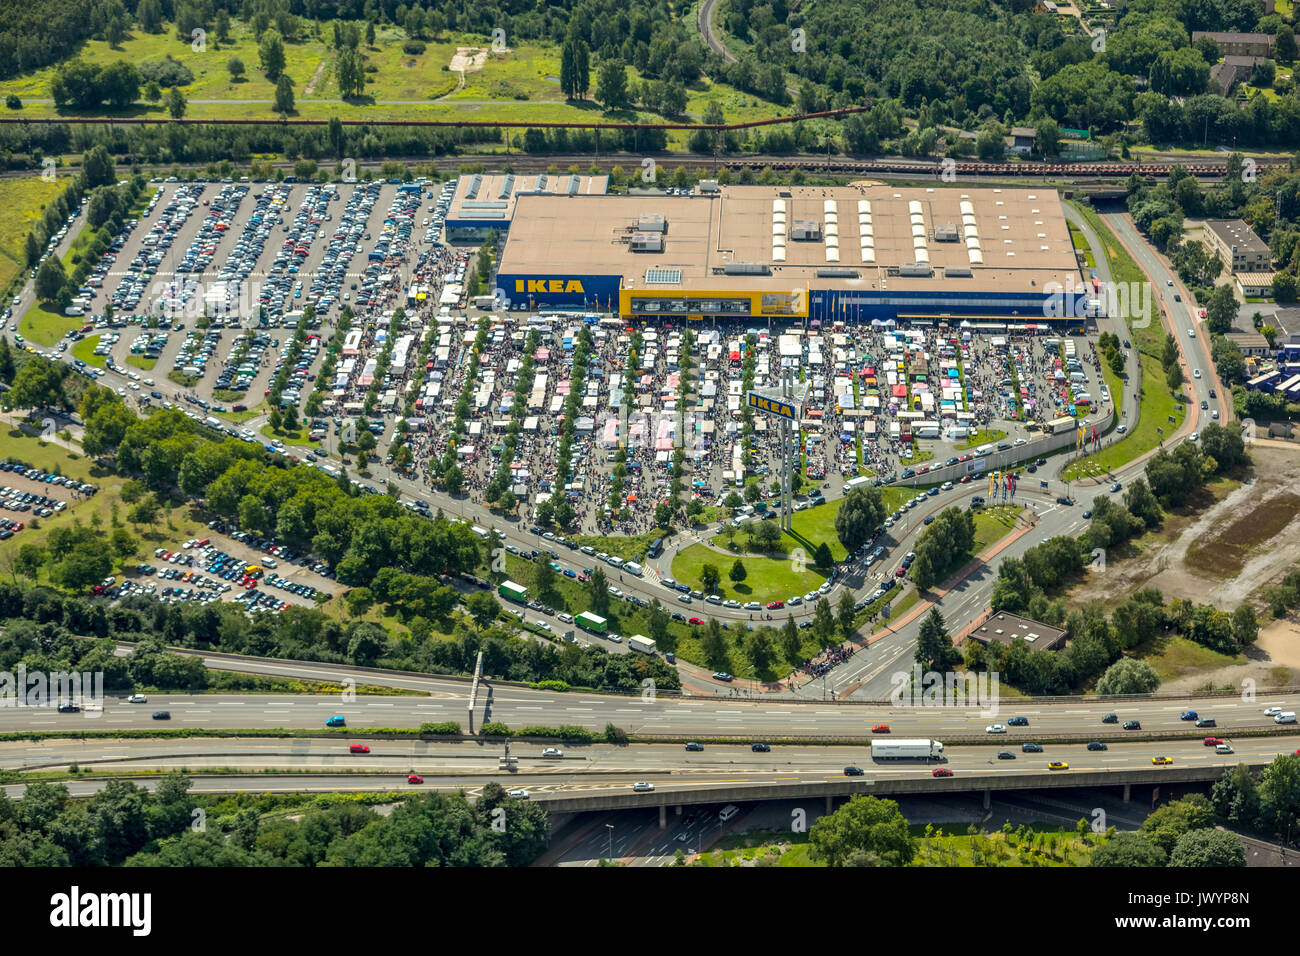 IKEA Möbel markt Flohmarkt, IKEA Duisburg-nord am Autobahnkreuz Duisburg-Nord, Möbel Discounter, A42 und A59, Duisburg, Ruhrgebiet, Stockfoto